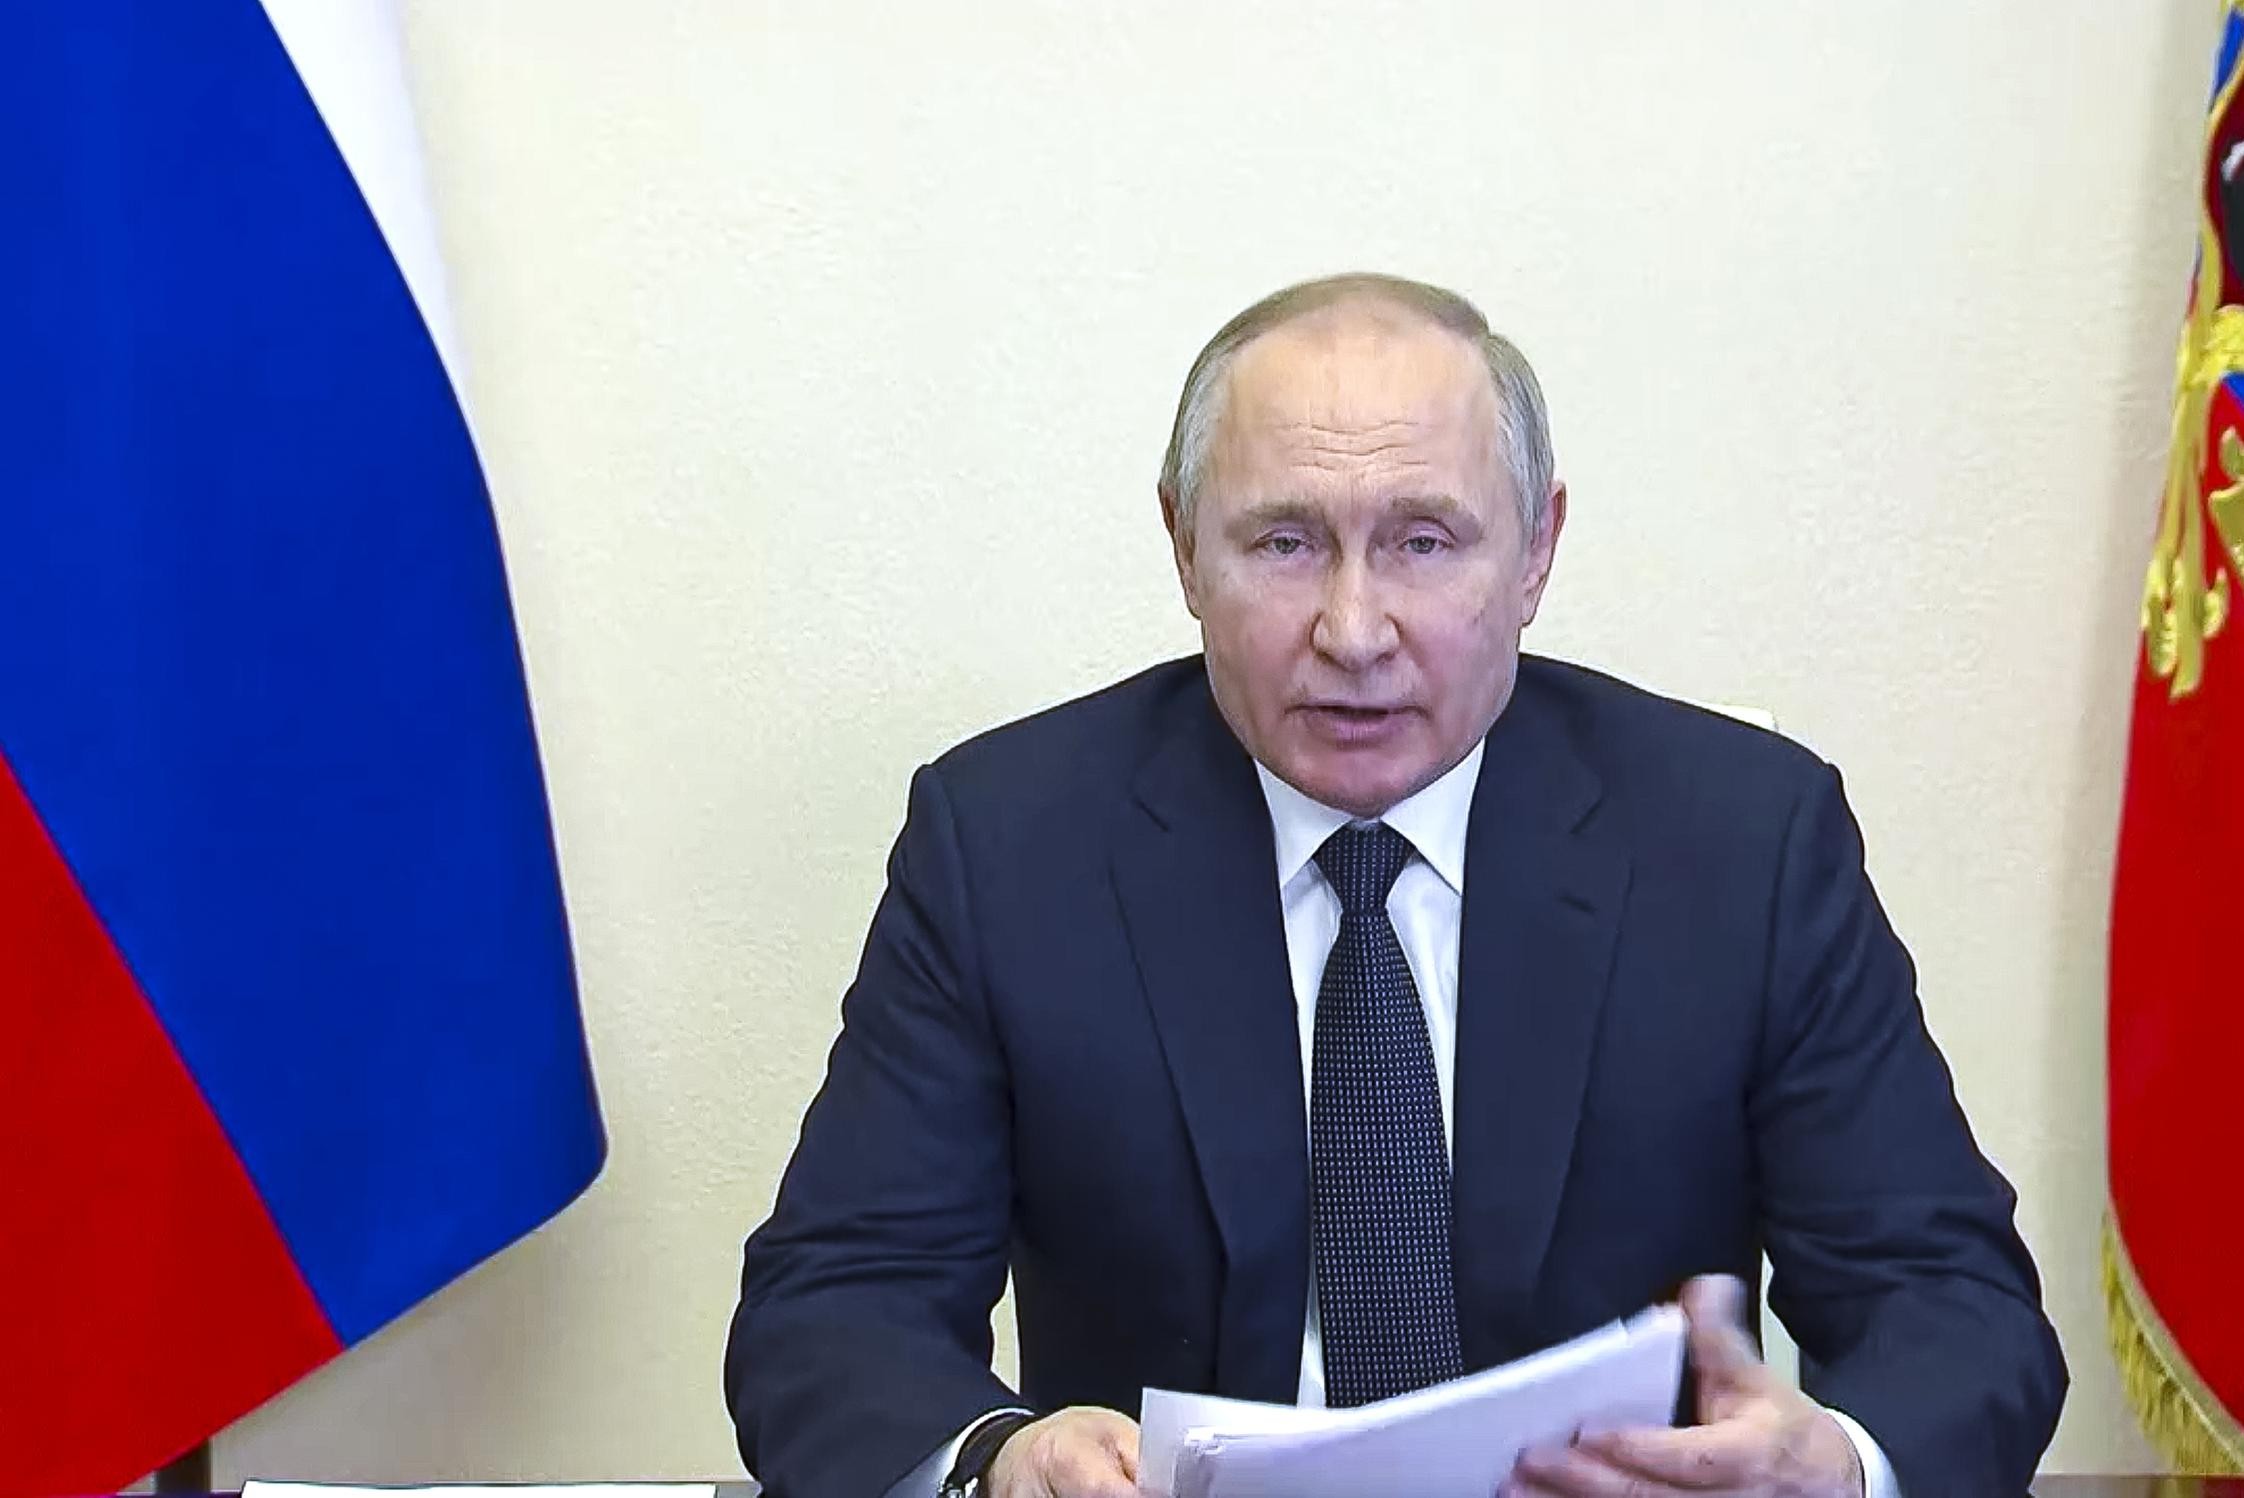 Президент Владимир Путин предостерегает россиян от прозападных «предателей»: «Необходимо самоочищение нашего общества»